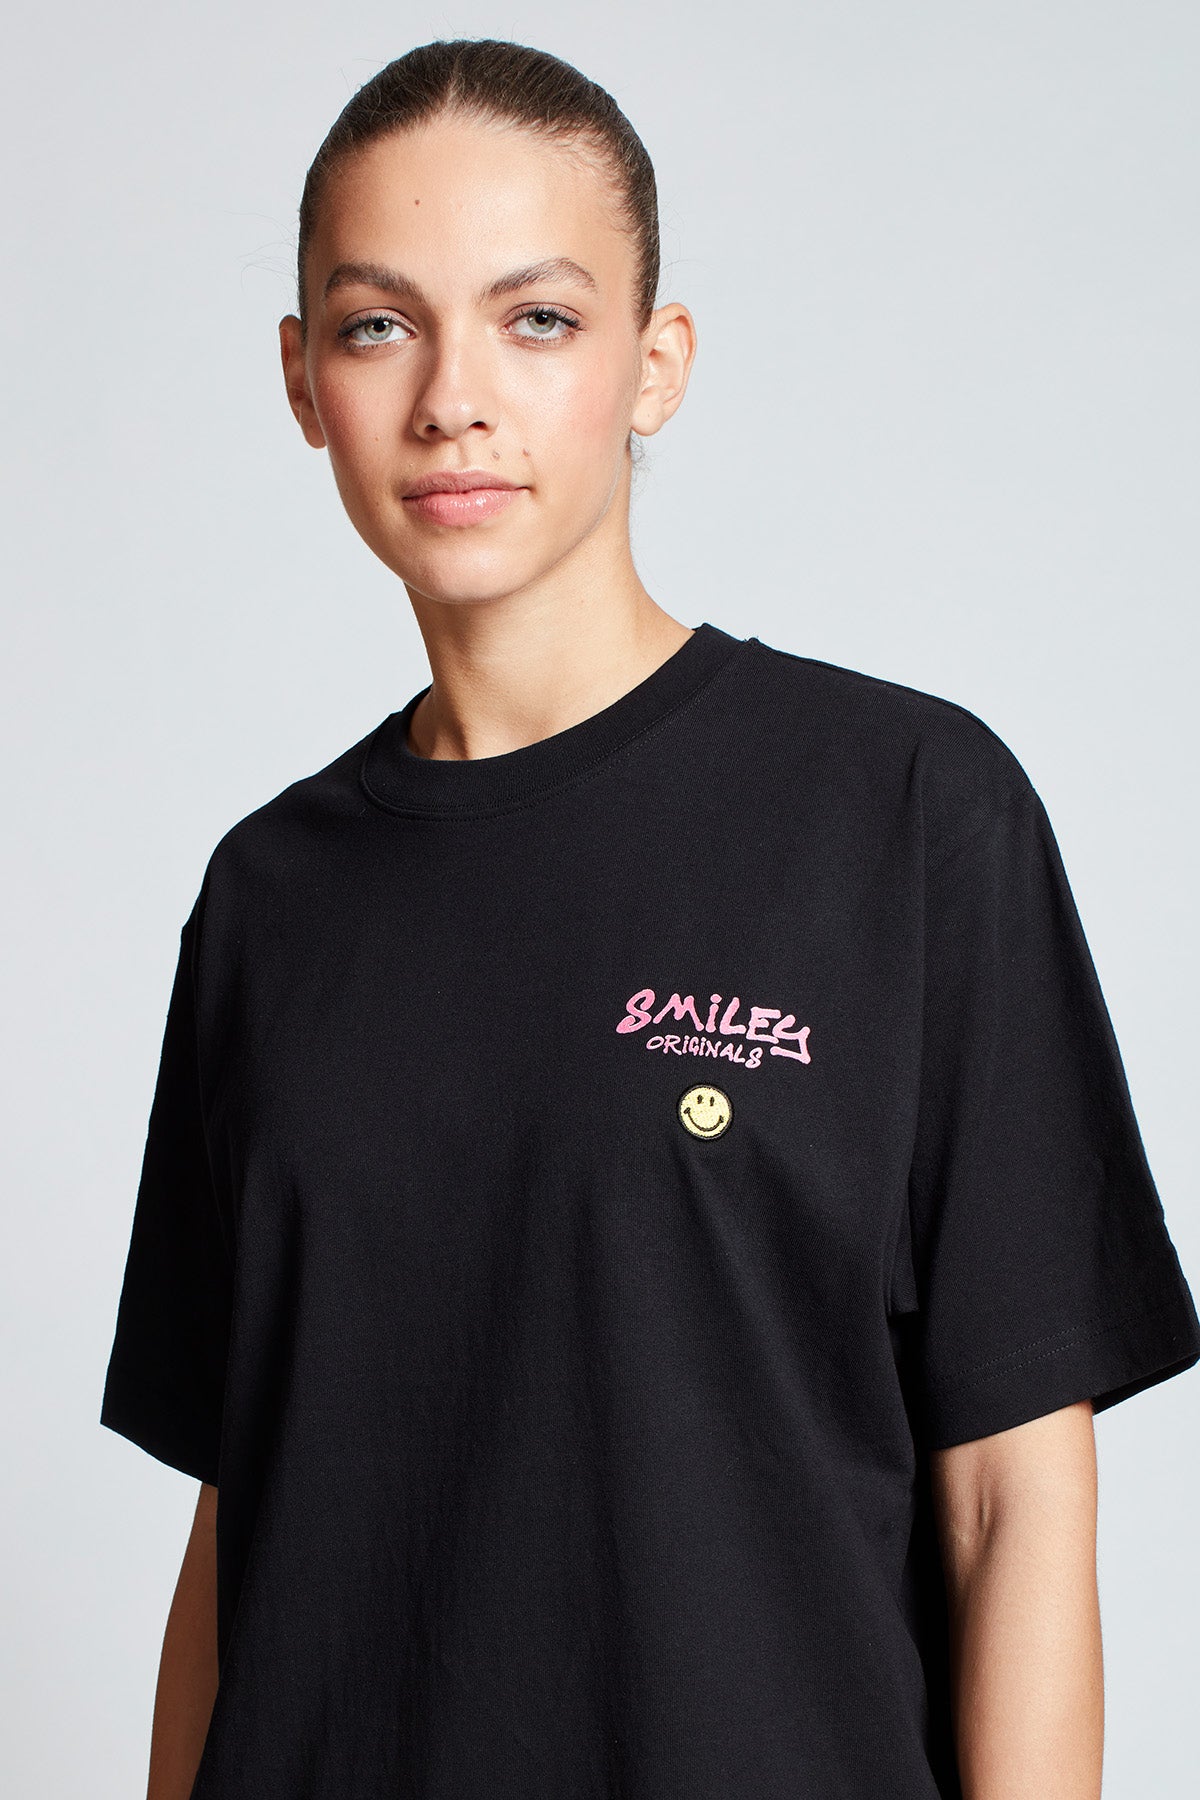 Smiley Originals® In Your Hands T-shirt in Black